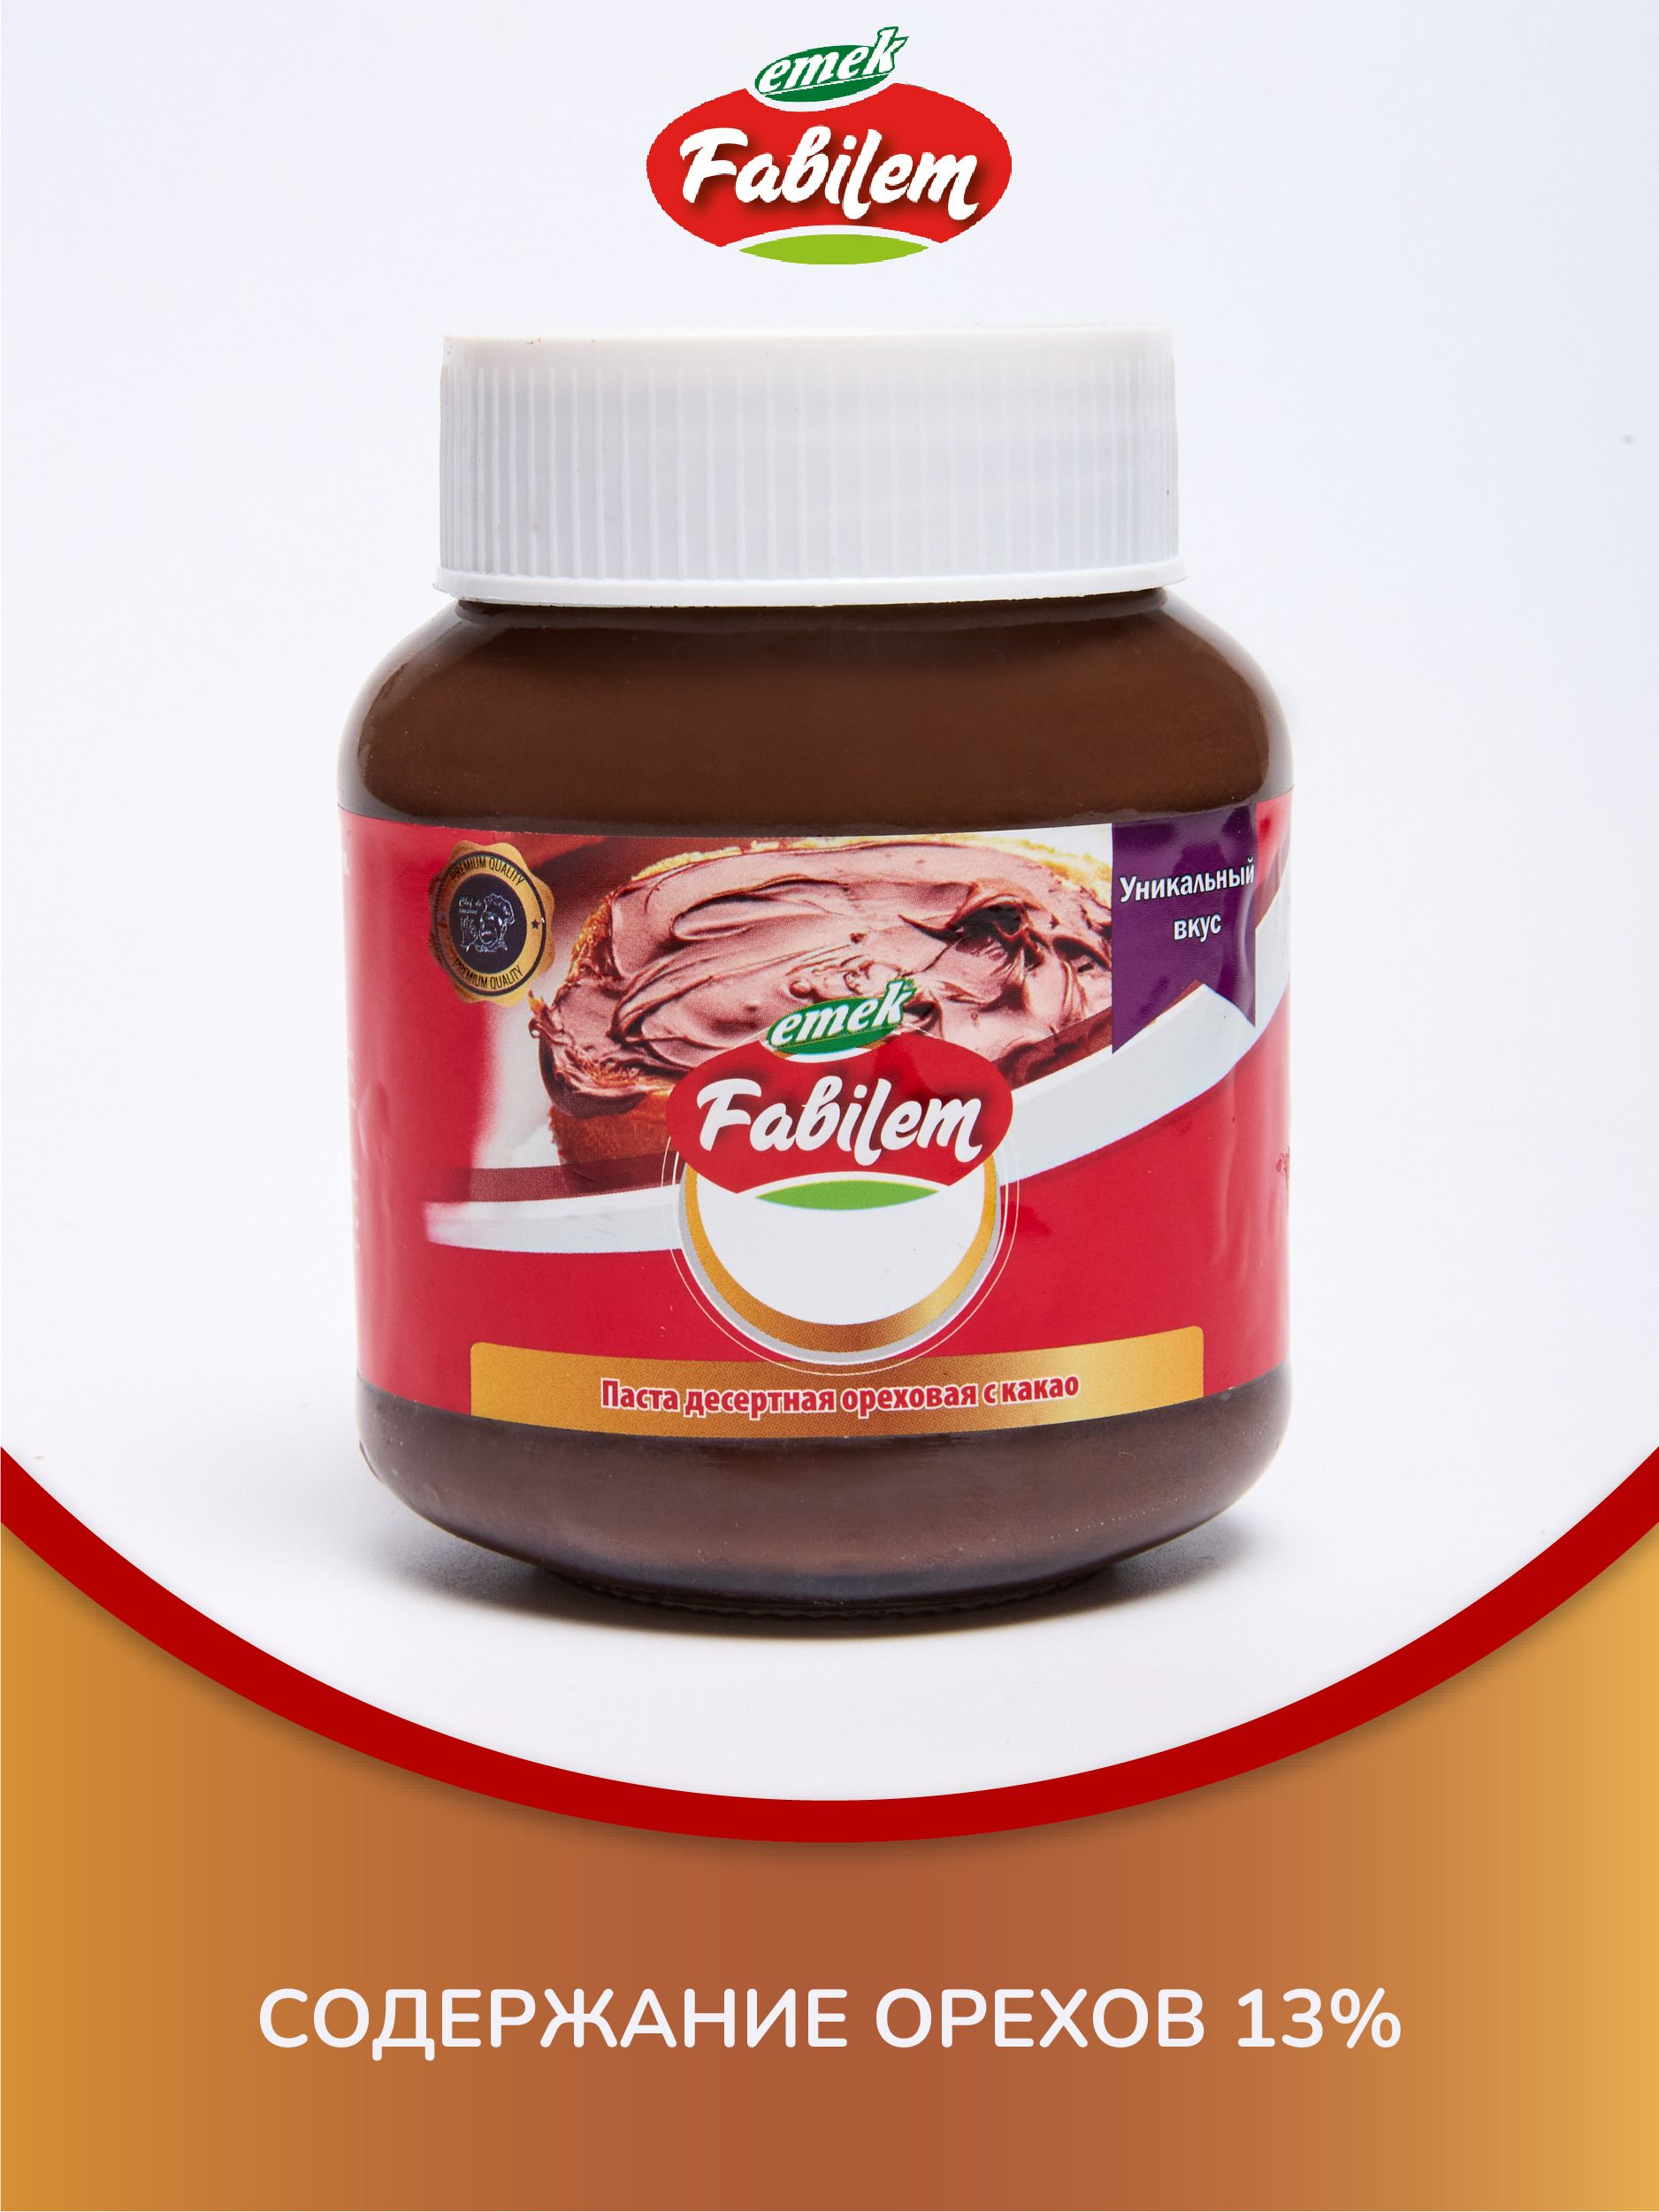 Шоколаднаяпаста"Fabilem"слесныморехом(13%)350грамм